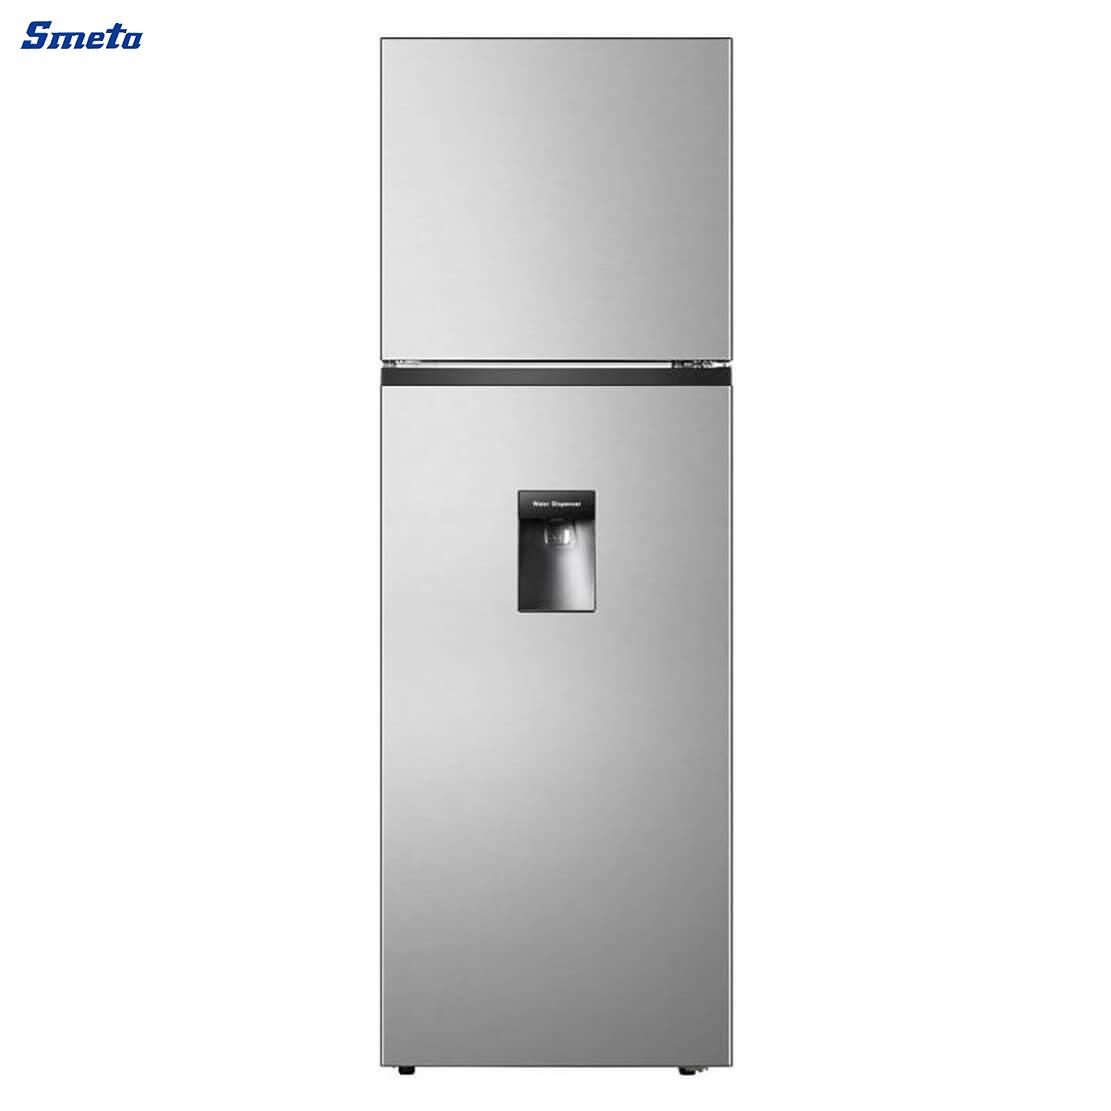 320L Double Door Top Freezer Refrigerator with Water Dispenser